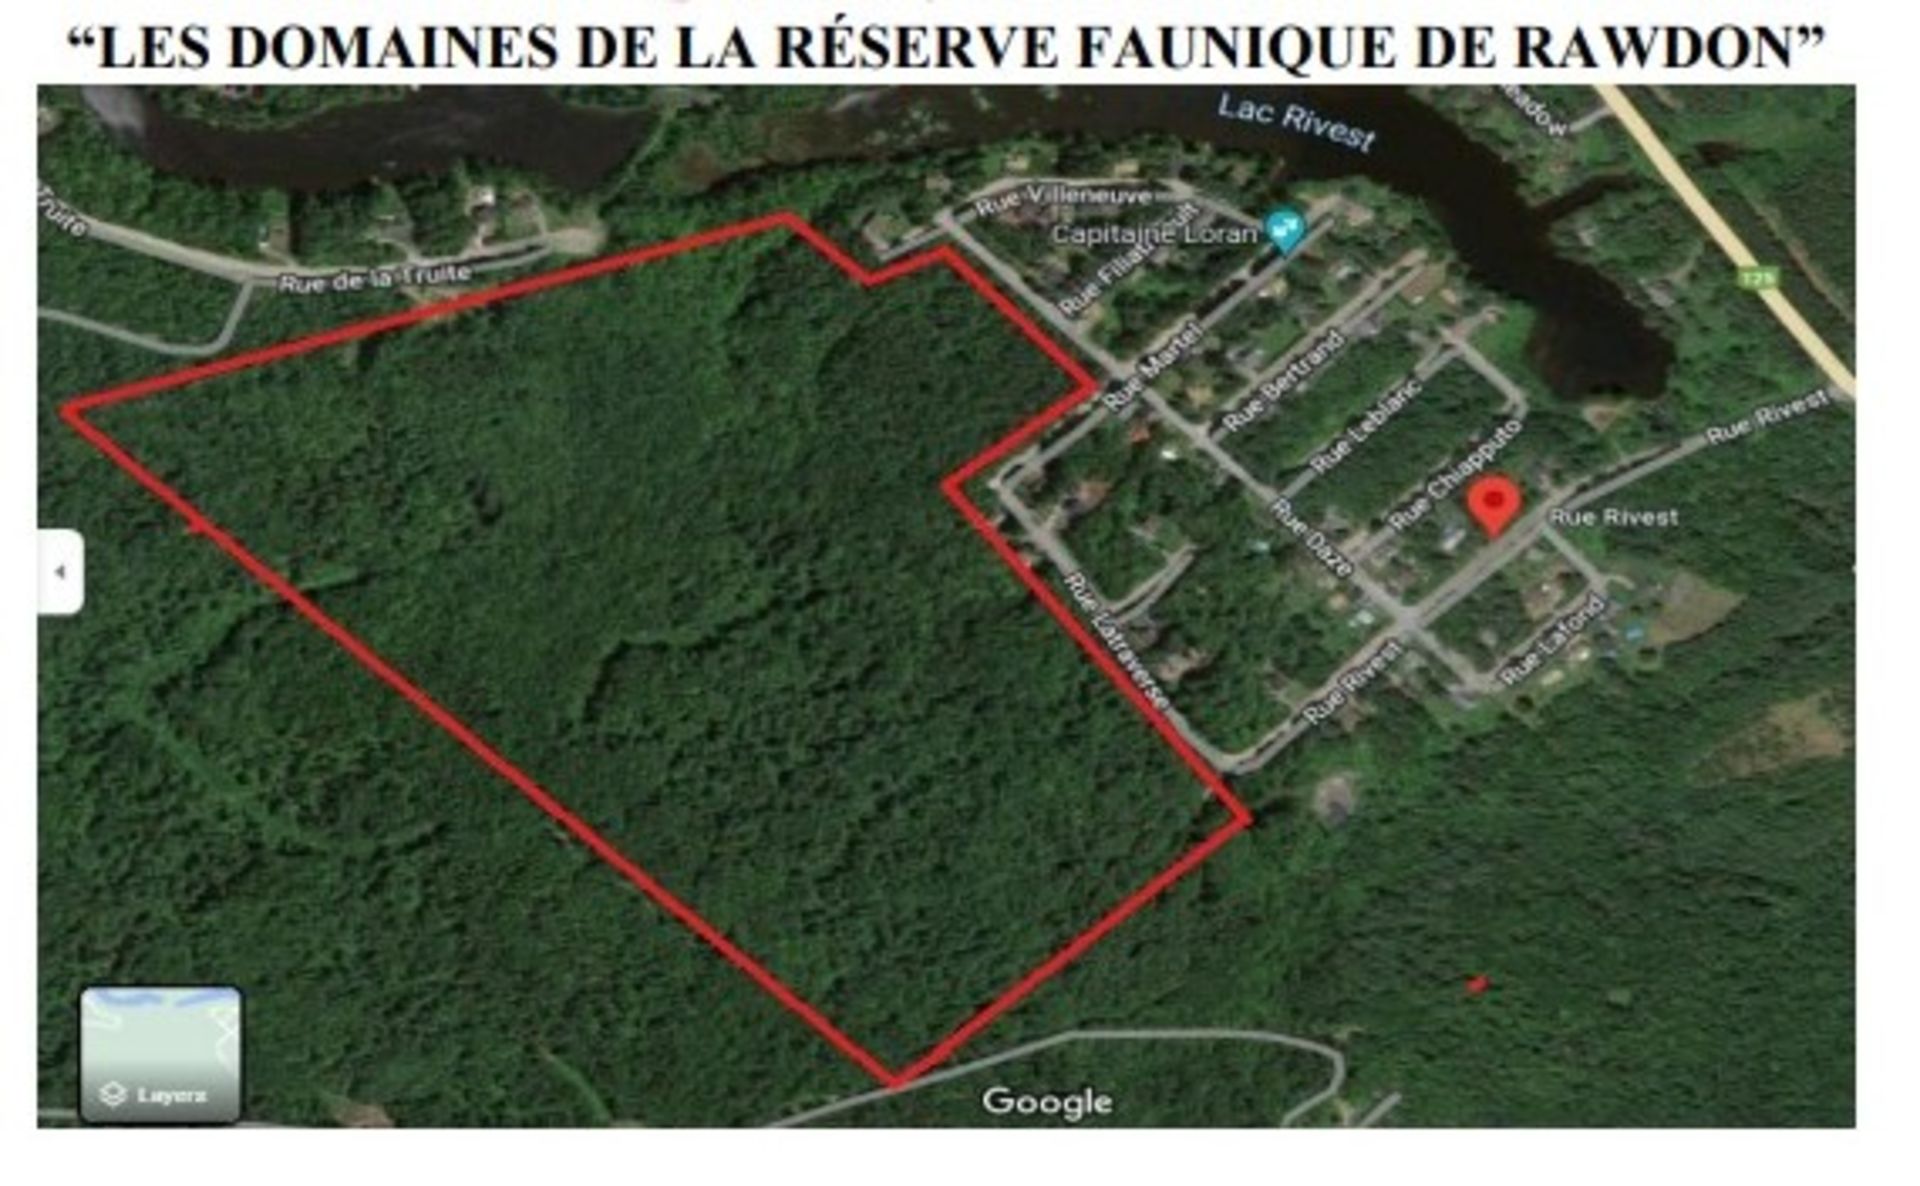 Les Domaines / Réserve Faunique de Rawdon - OVER 72 MILLION SQ.FT FOR SALE (see below for details)